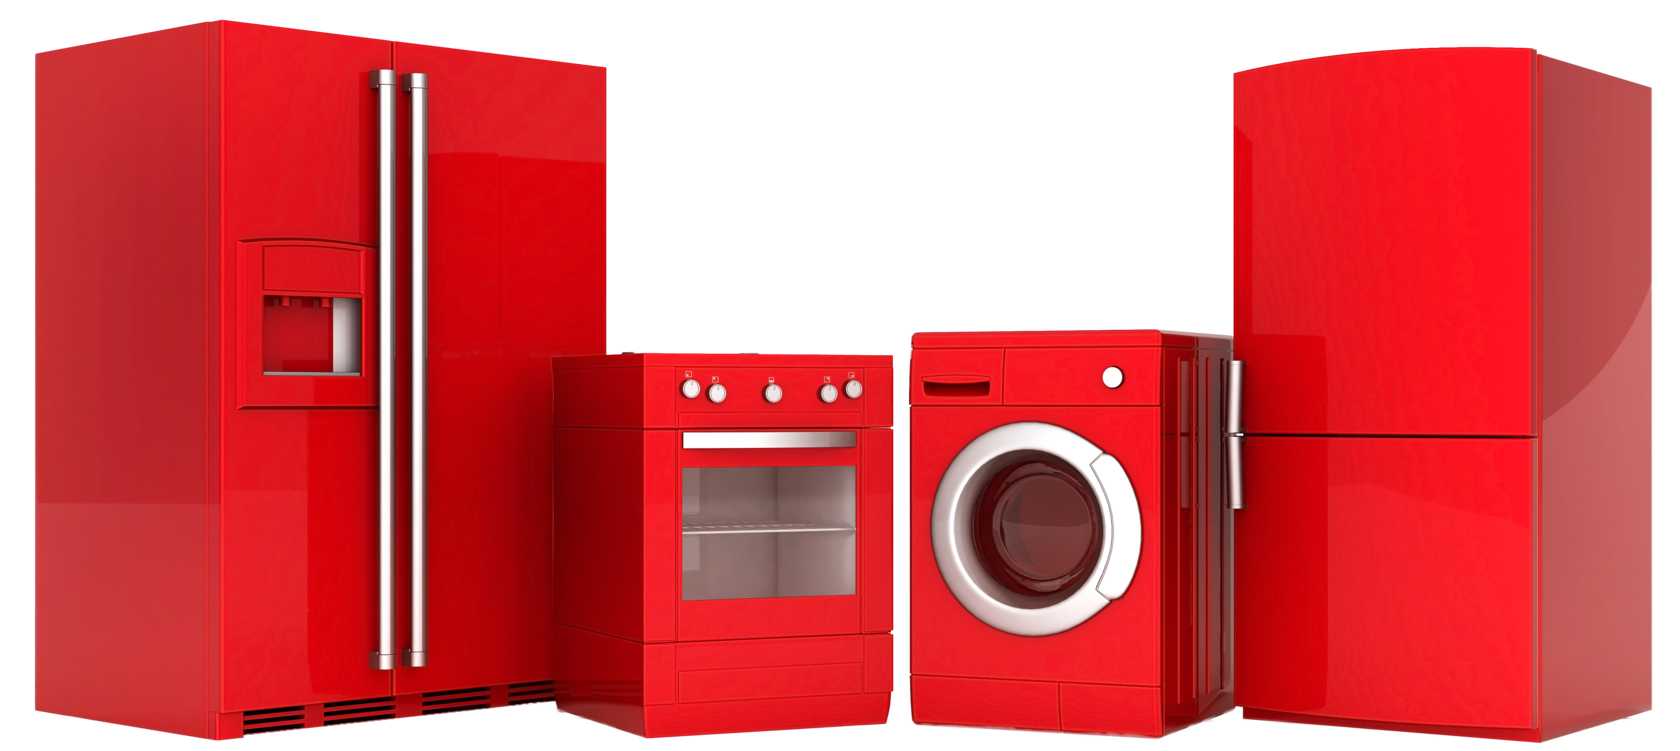 Бытовая техника стиральных машин холодильники. Бытовая техника. Холодильник и стиральная машина. Крупная бытовая техника. Красная бытовая техника.